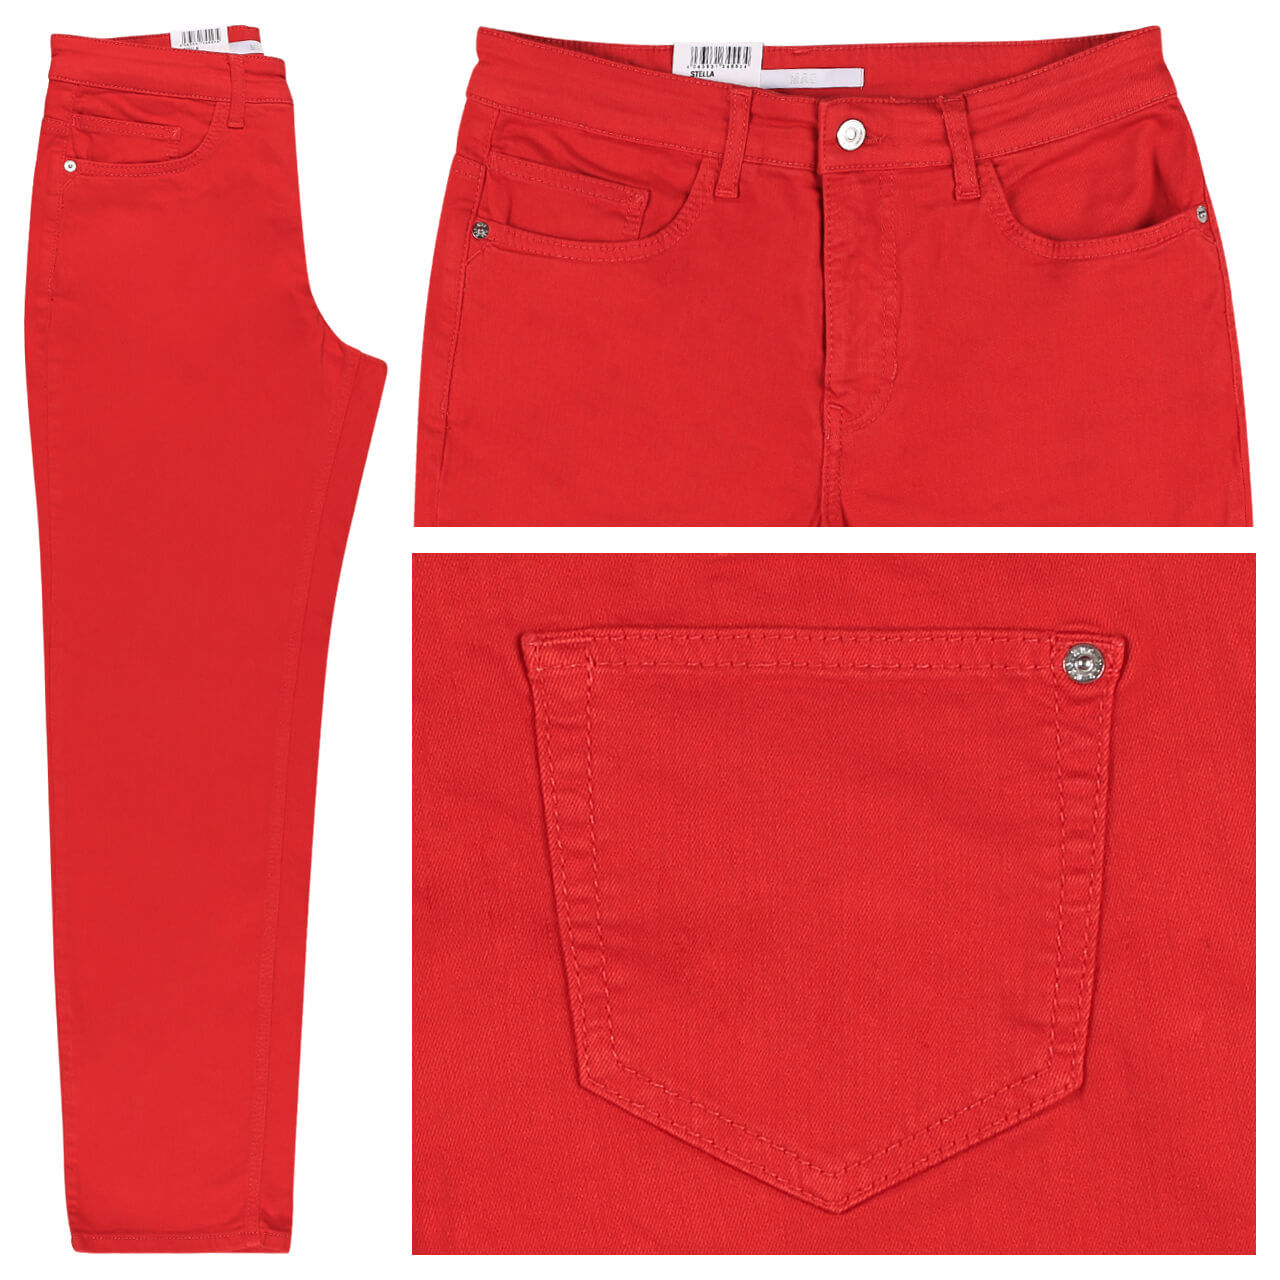 MAC Jeans Stella für Damen in Rot, FarbNr.: 449R